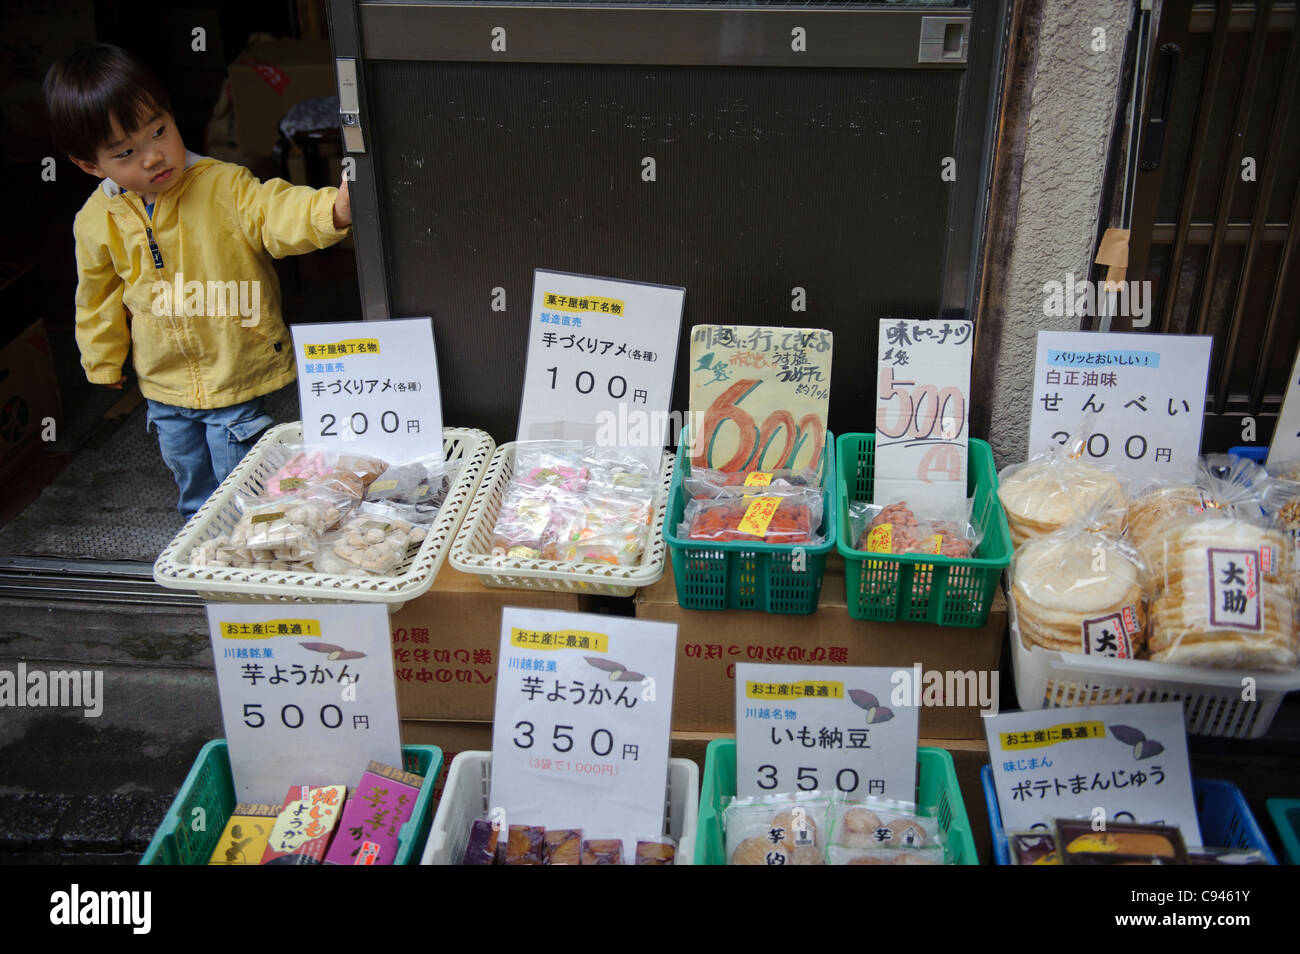 Sweets on sale in Kashiyayokocho, Kawagoe, Saitama Prefecture, Japan, May 7, 2011. Stock Photo